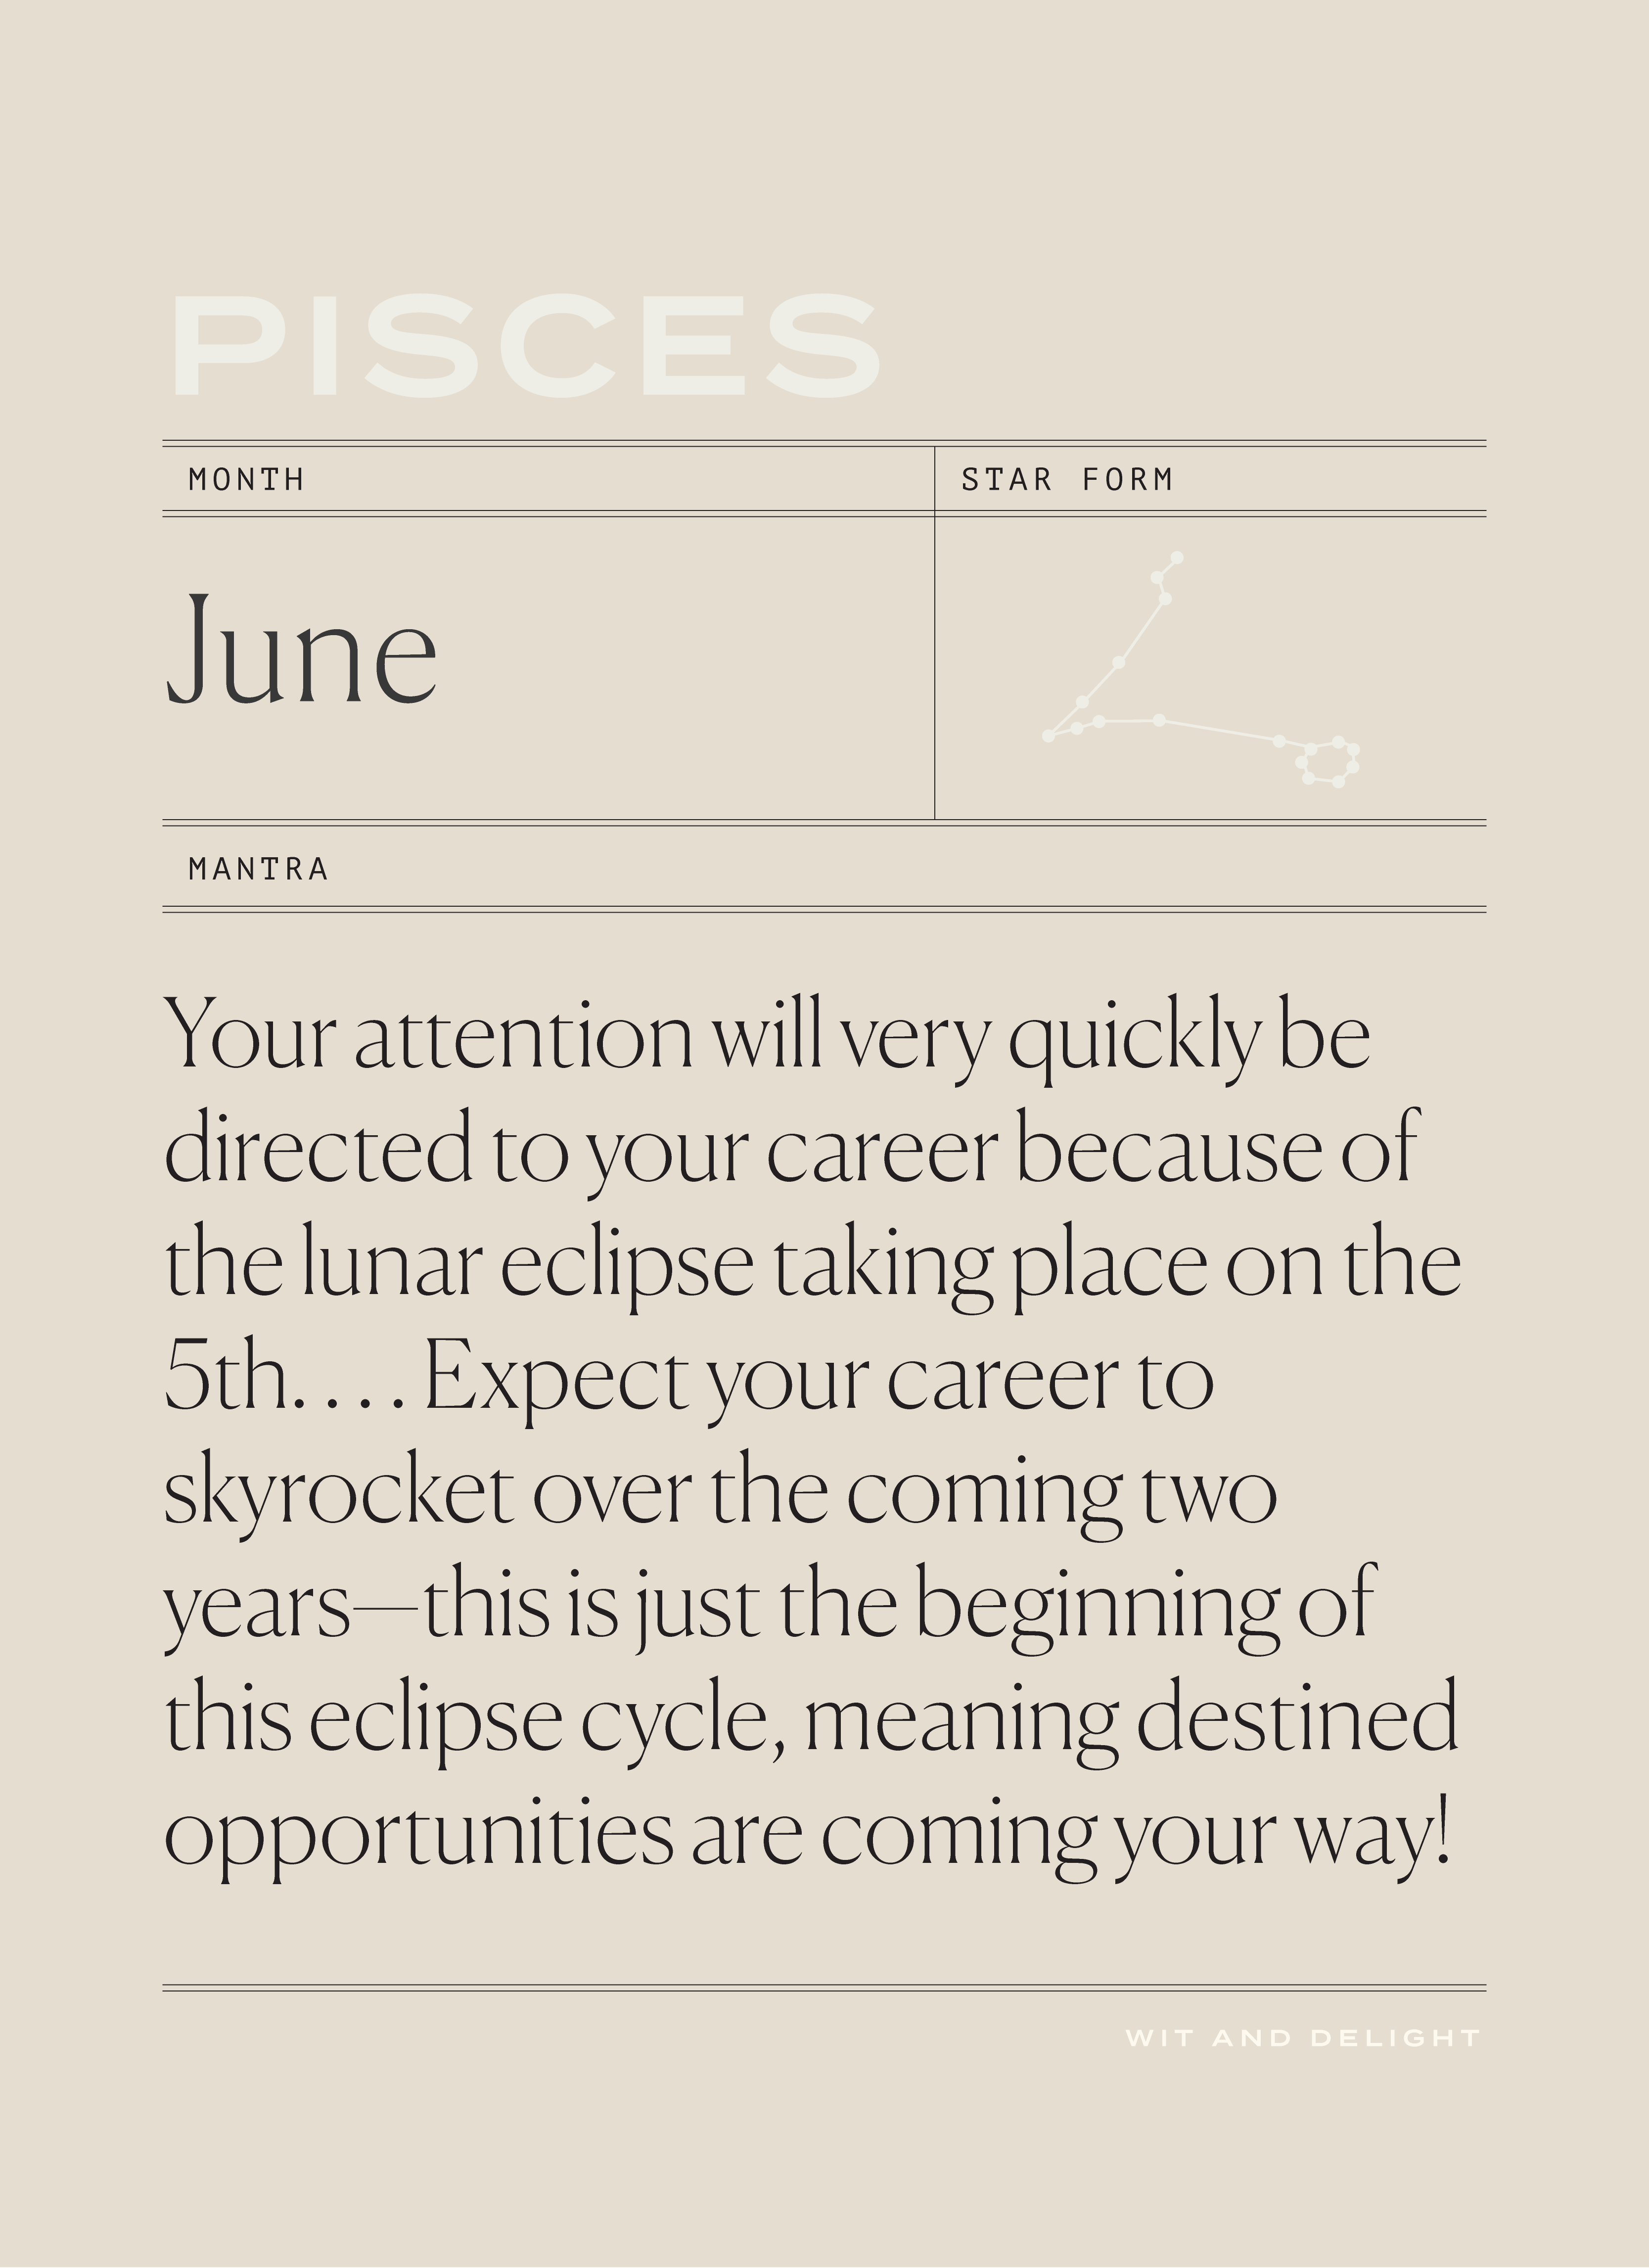 Pisces June 2020 Horoscopes | Wit & Delight